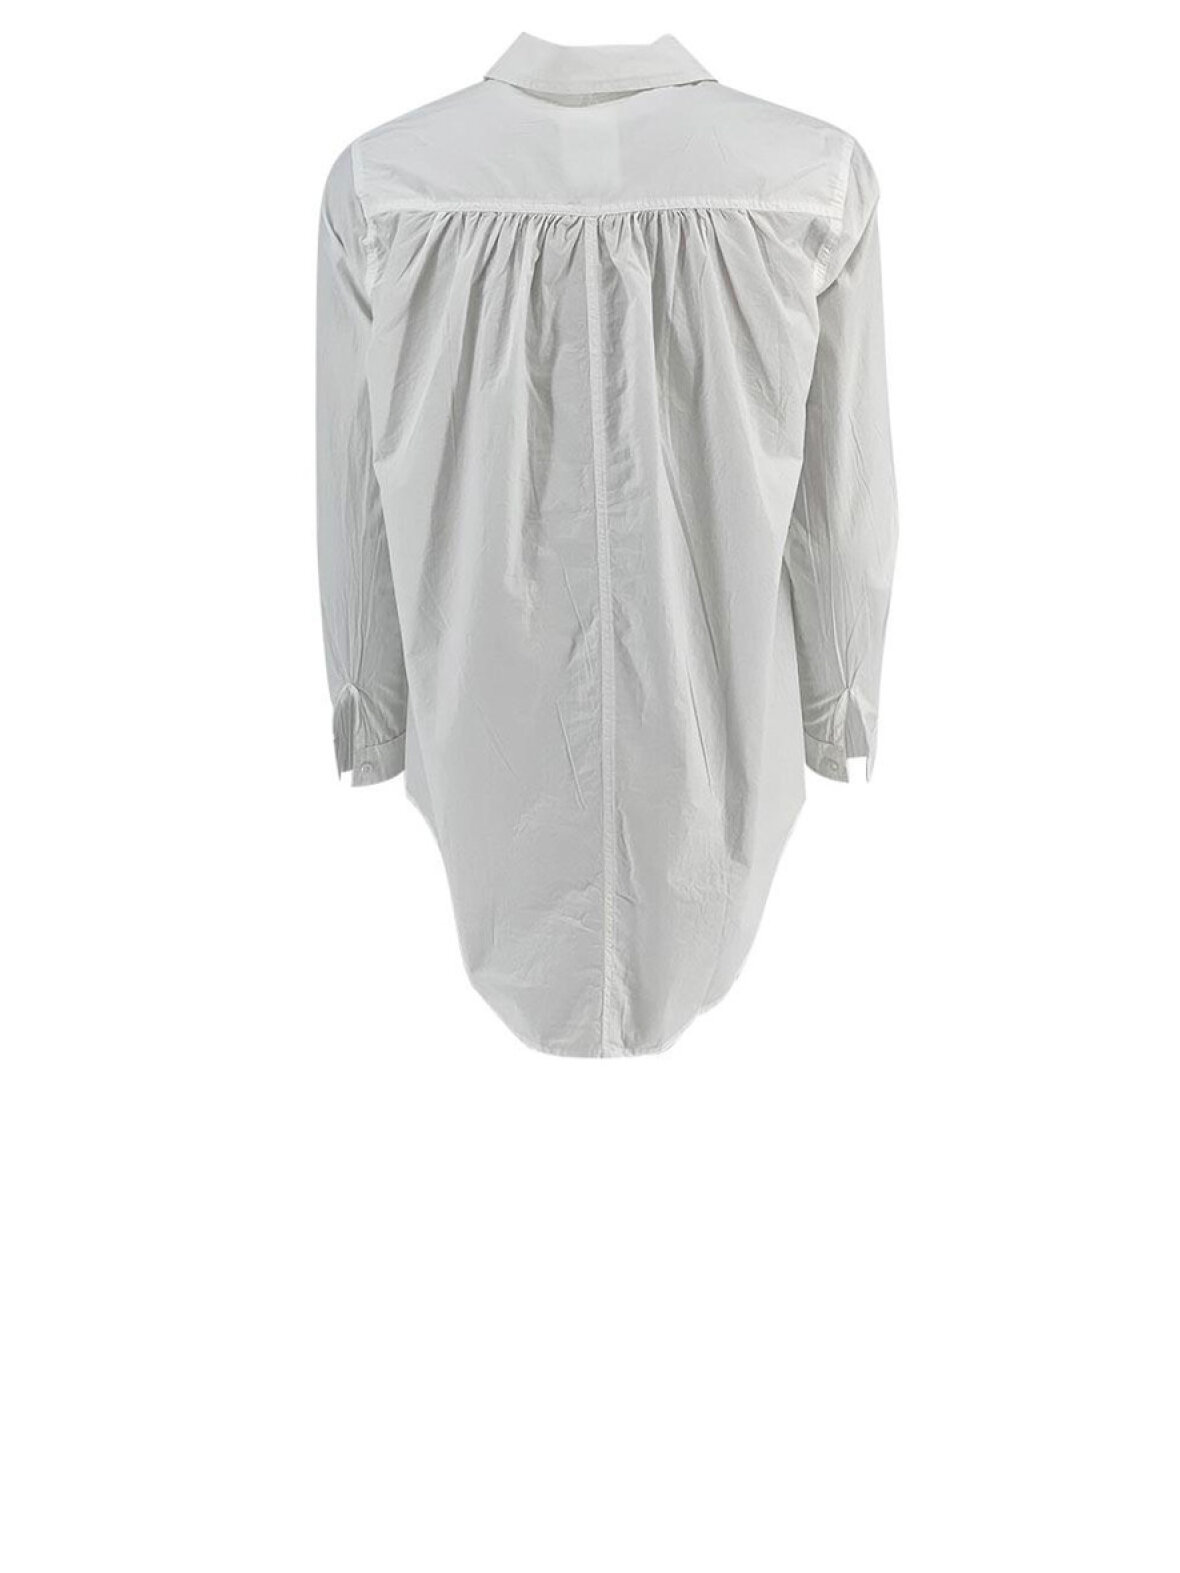 quagga Emotion Krav A'POKE - Project Aj117 Hedine Shirt White - Shop hvid skjorte